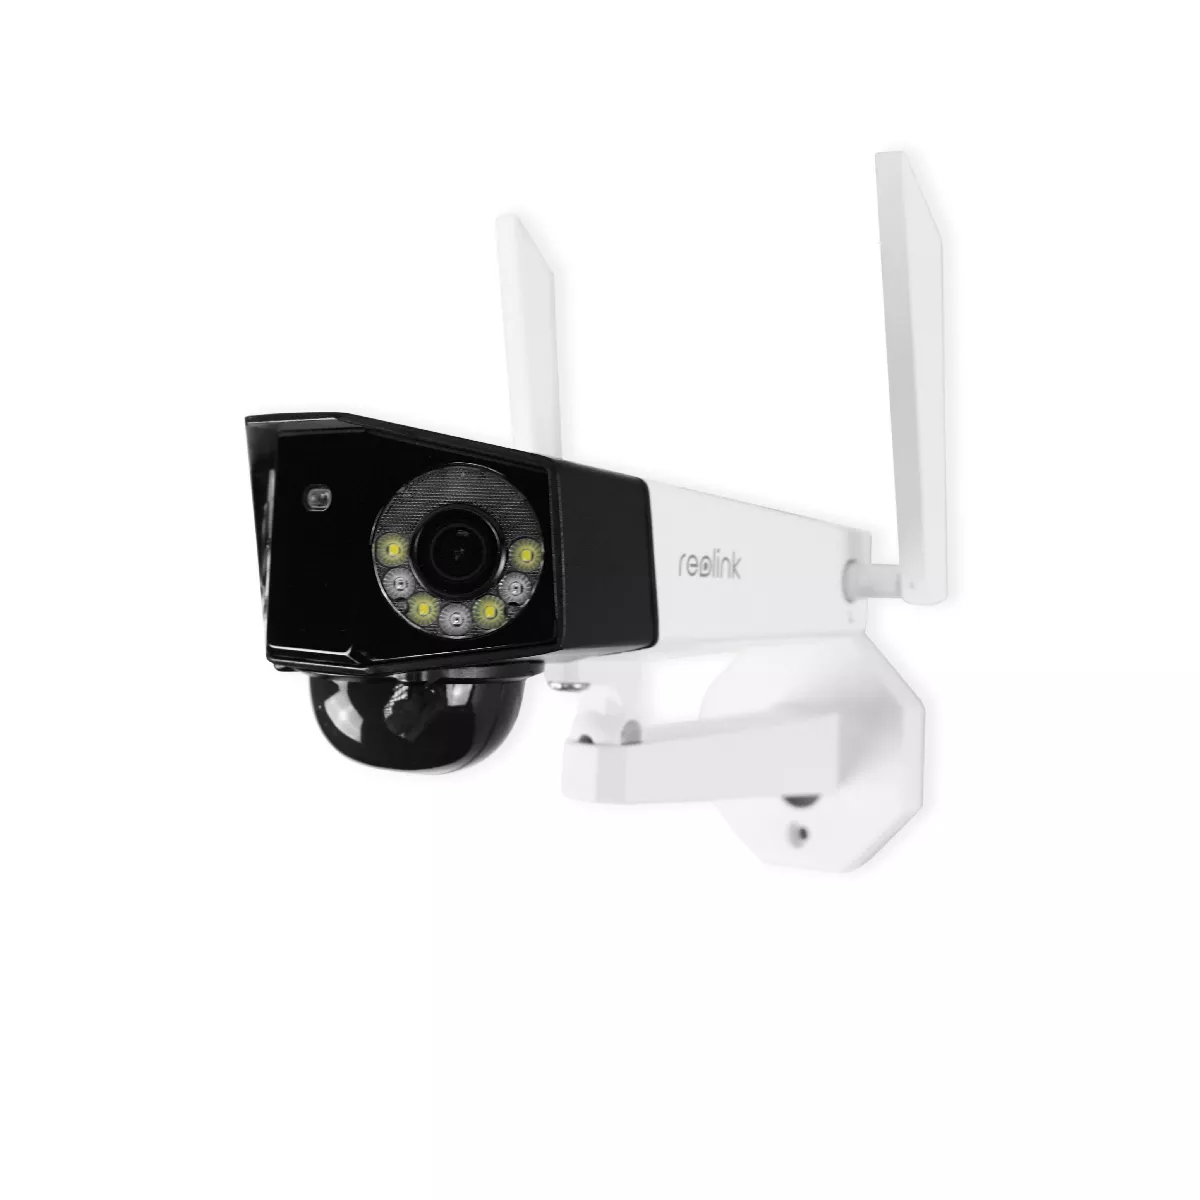 4K 8MP Caméra Surveillance WiFi Extérieure avec Projecteur, 2,4/5Ghz WiFi  PTZ Caméra Détection Humaine/Animaux/Véhicule